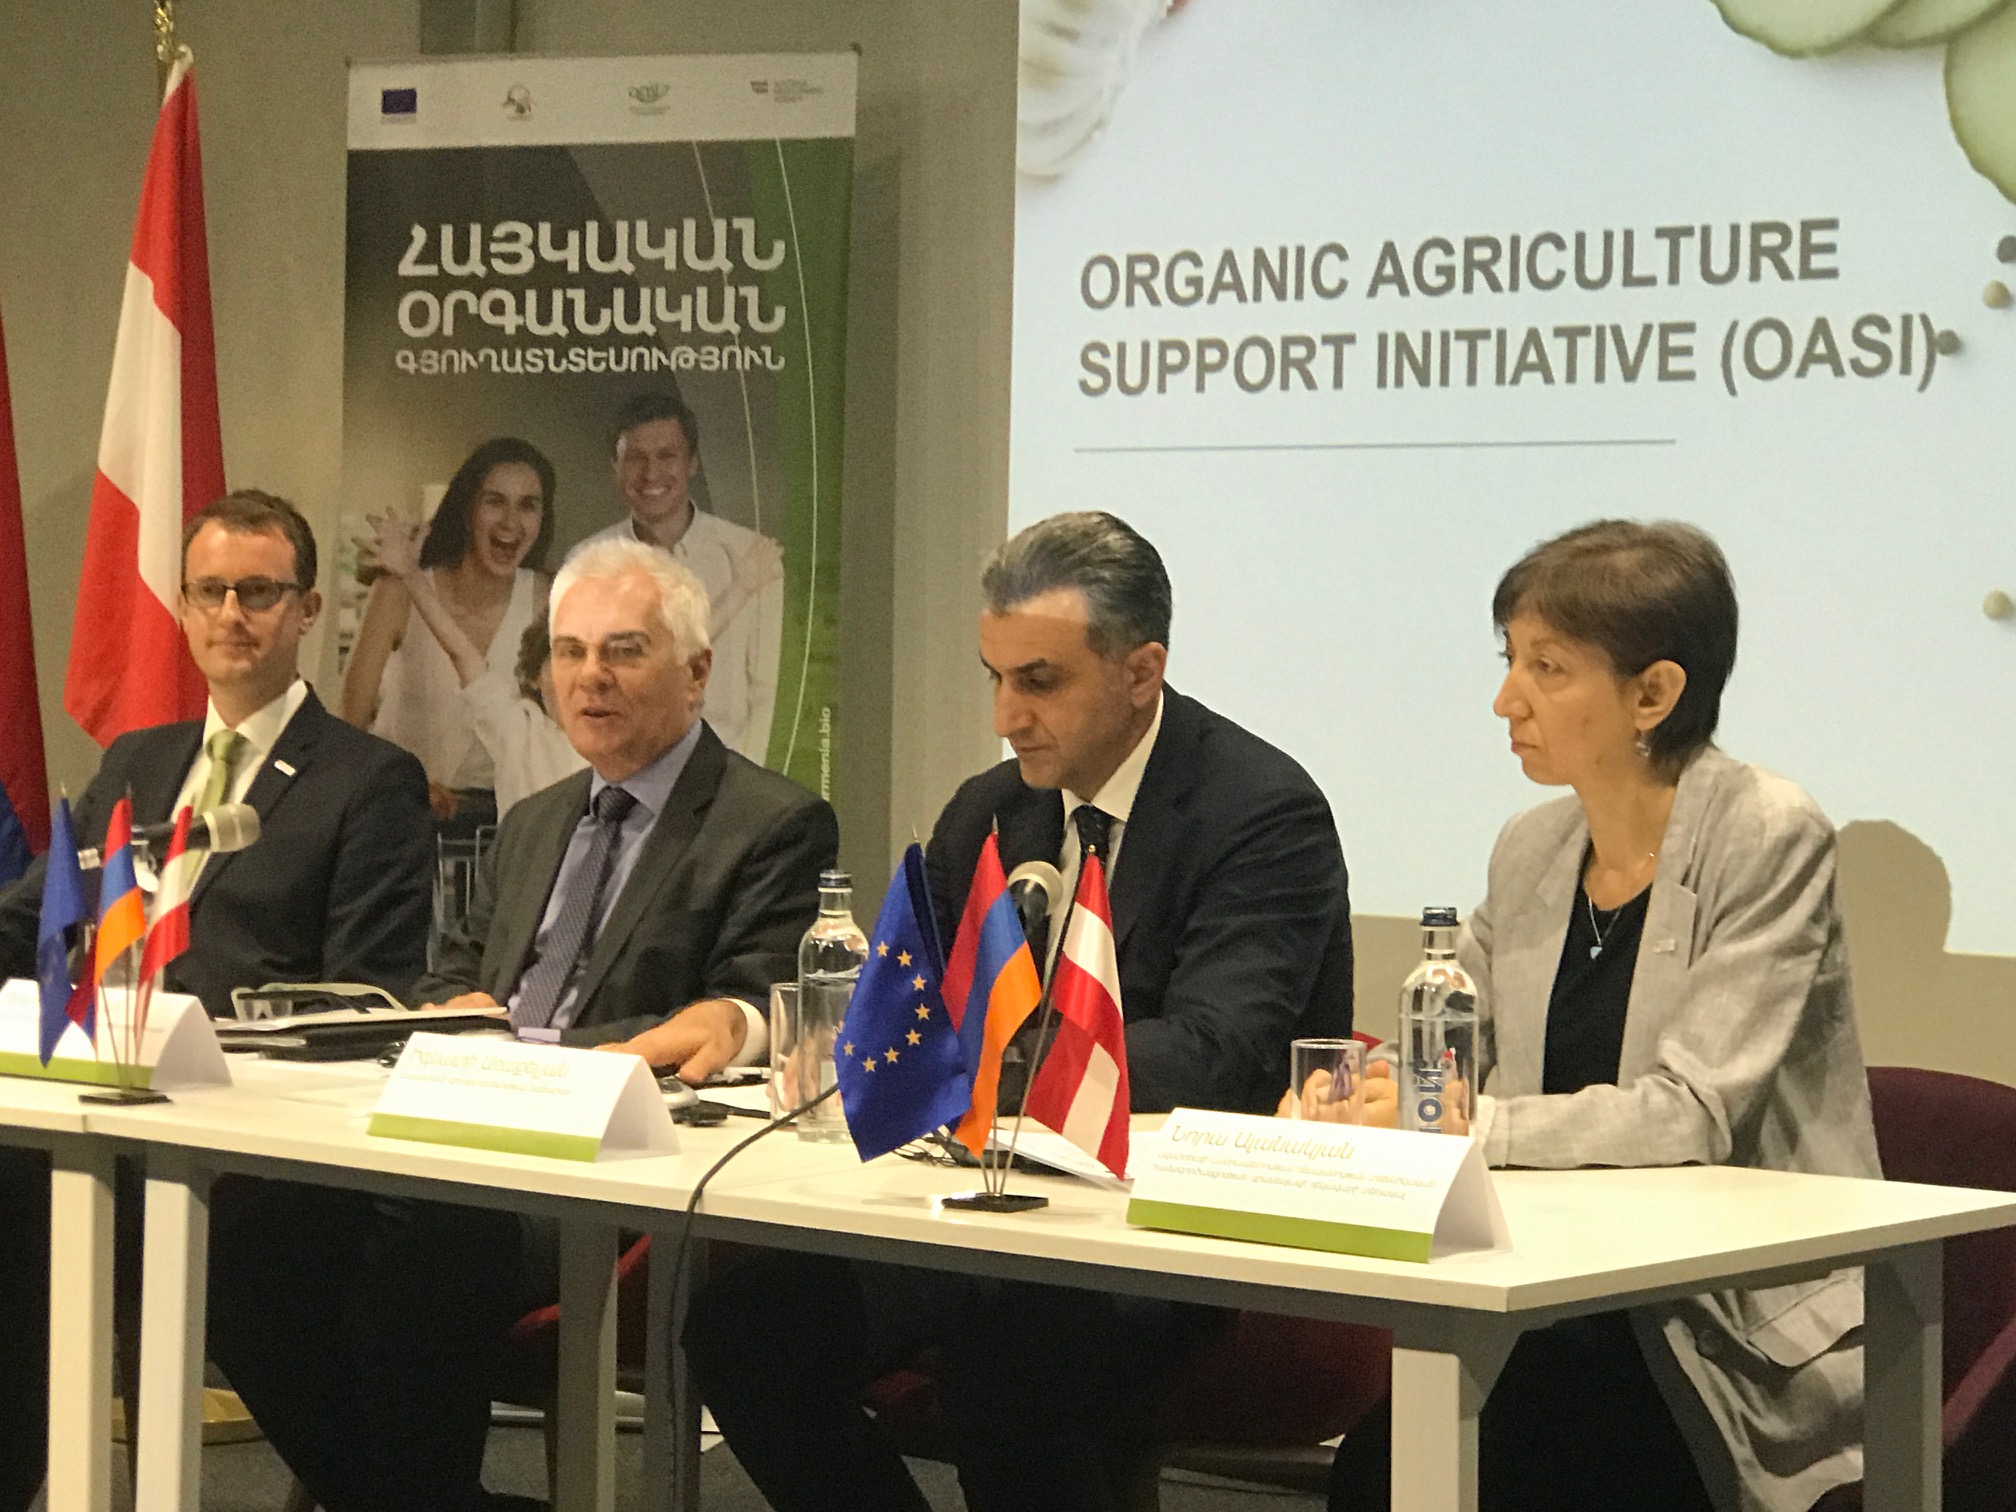 ԵՄ Հայաստանի օրգանական գյուղատնտեսական ապրանքների համար մեծ հեռանկարներ է տեսնում եվրոպական շուկայում